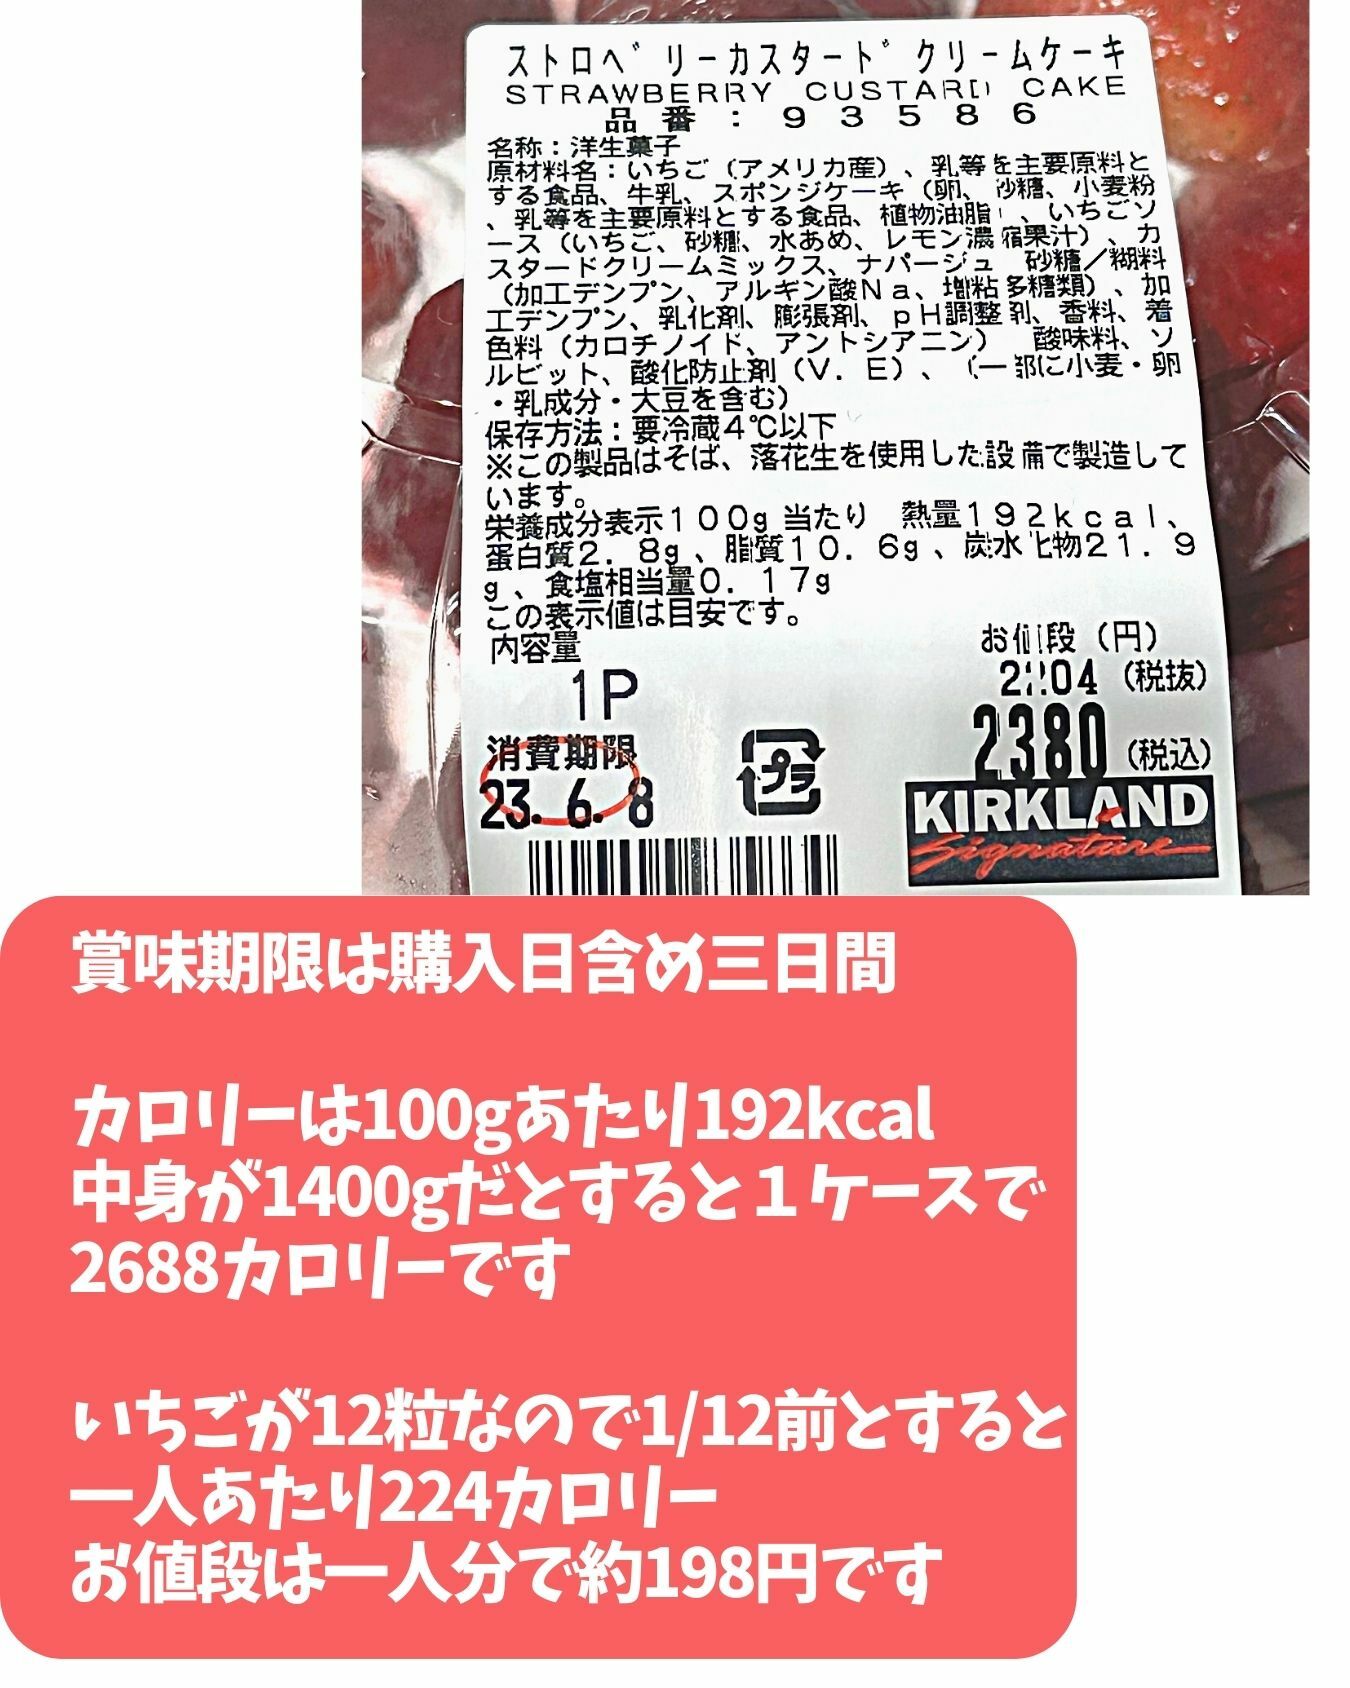 【コストコ】新商品ストロベリーカスタードクリームケーキ　パッケージ情報